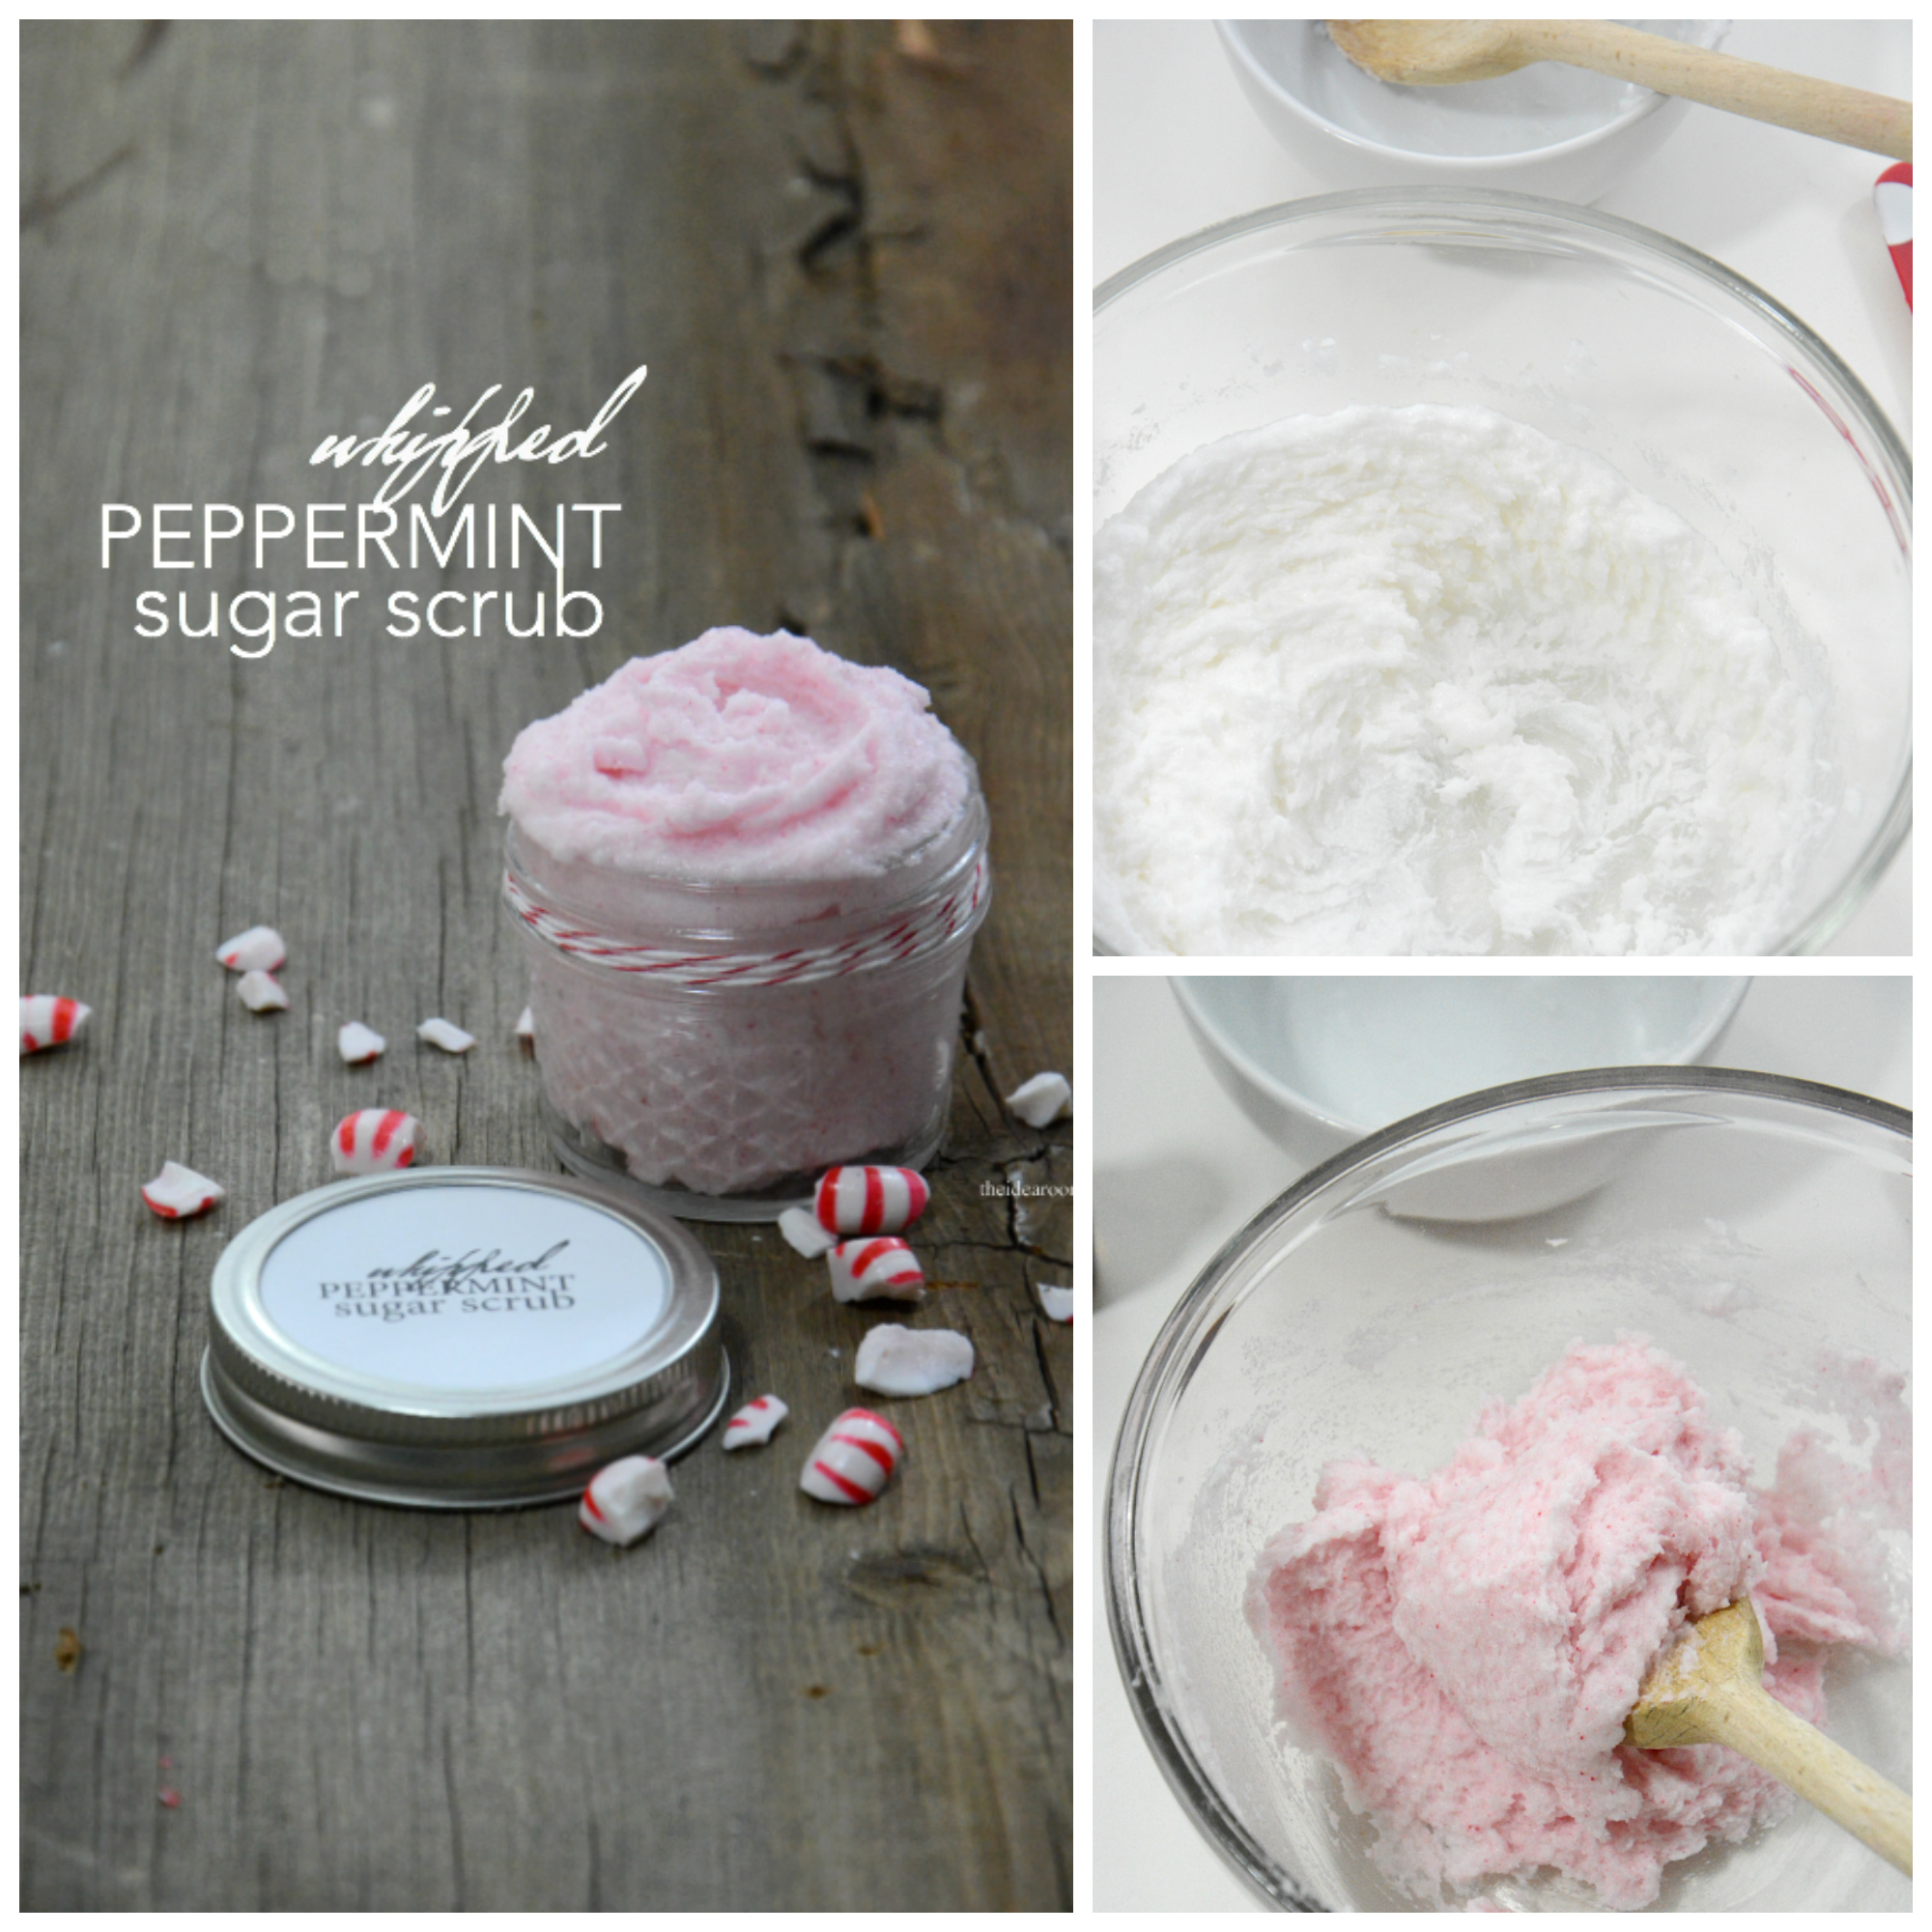 Whipped Peppermint Sugar Scrub Recipe